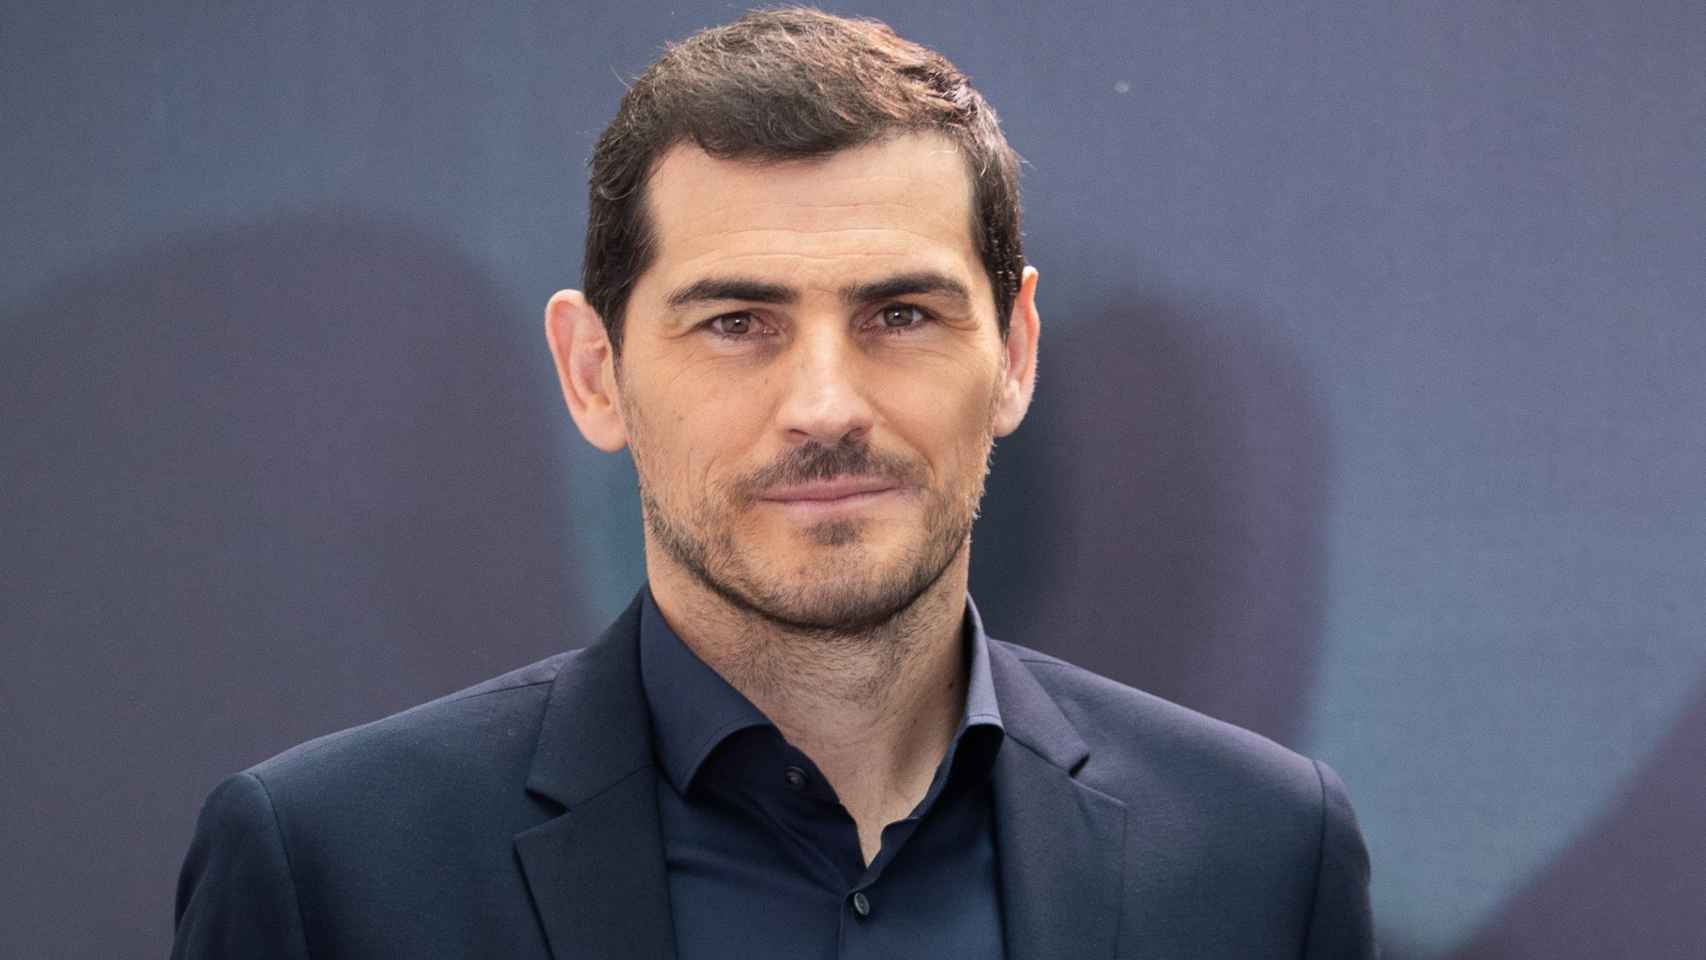 El deportista Iker Casillas en un acto público en noviembre de 2020, en Madrid.